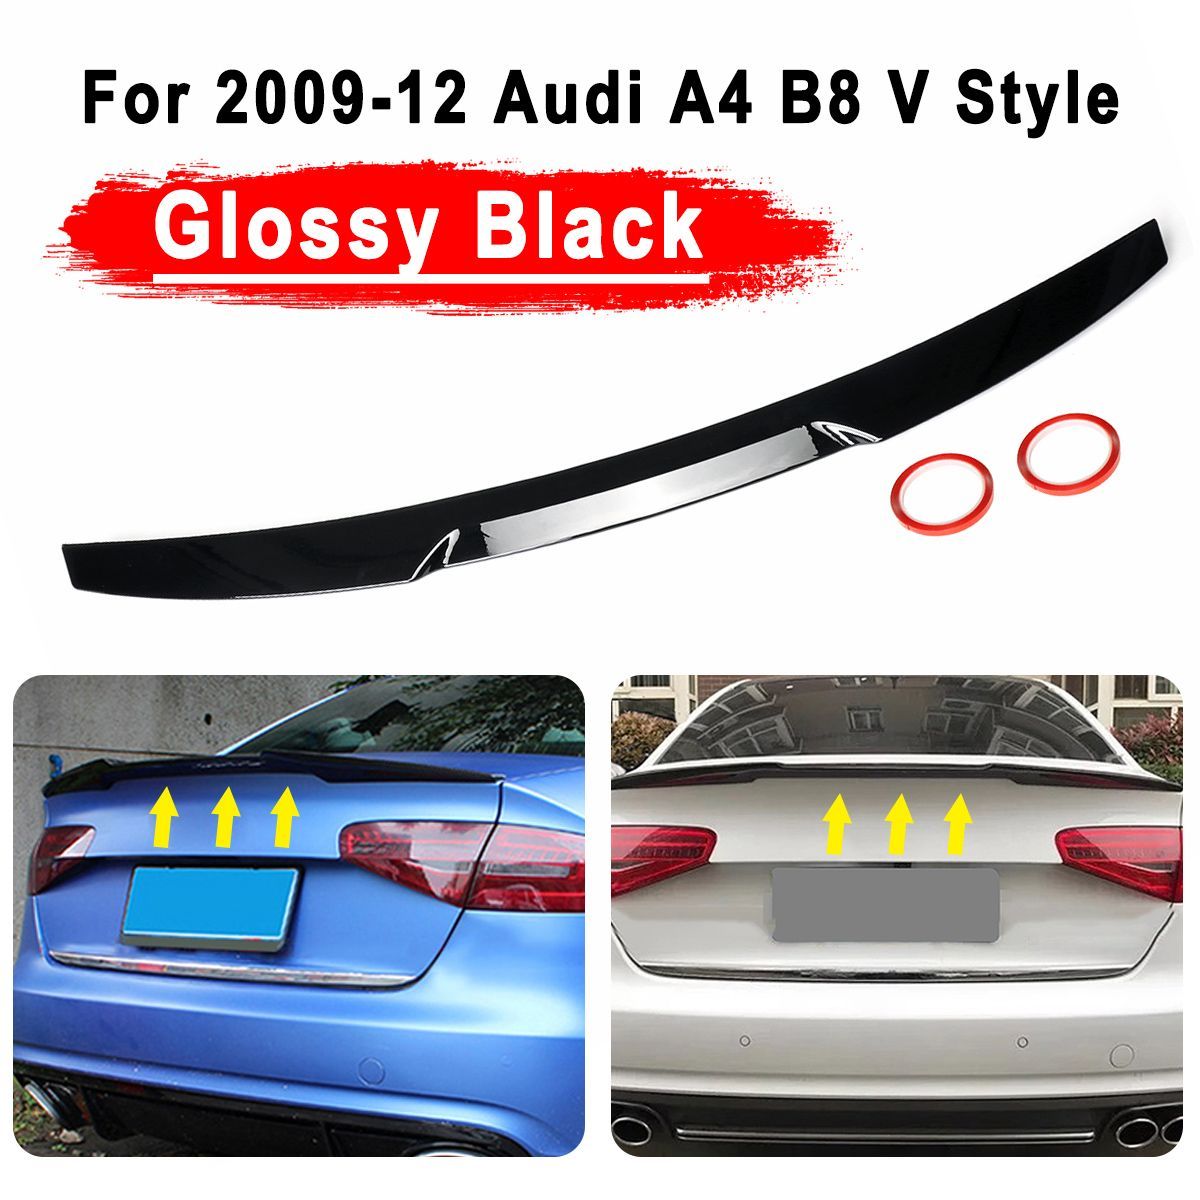 Glossy-Black-Trunk-Lid-Spoiler-Highkick-Duckbill-M4-V-Style-For-Audi-A4-B8-2009-2012-1663710